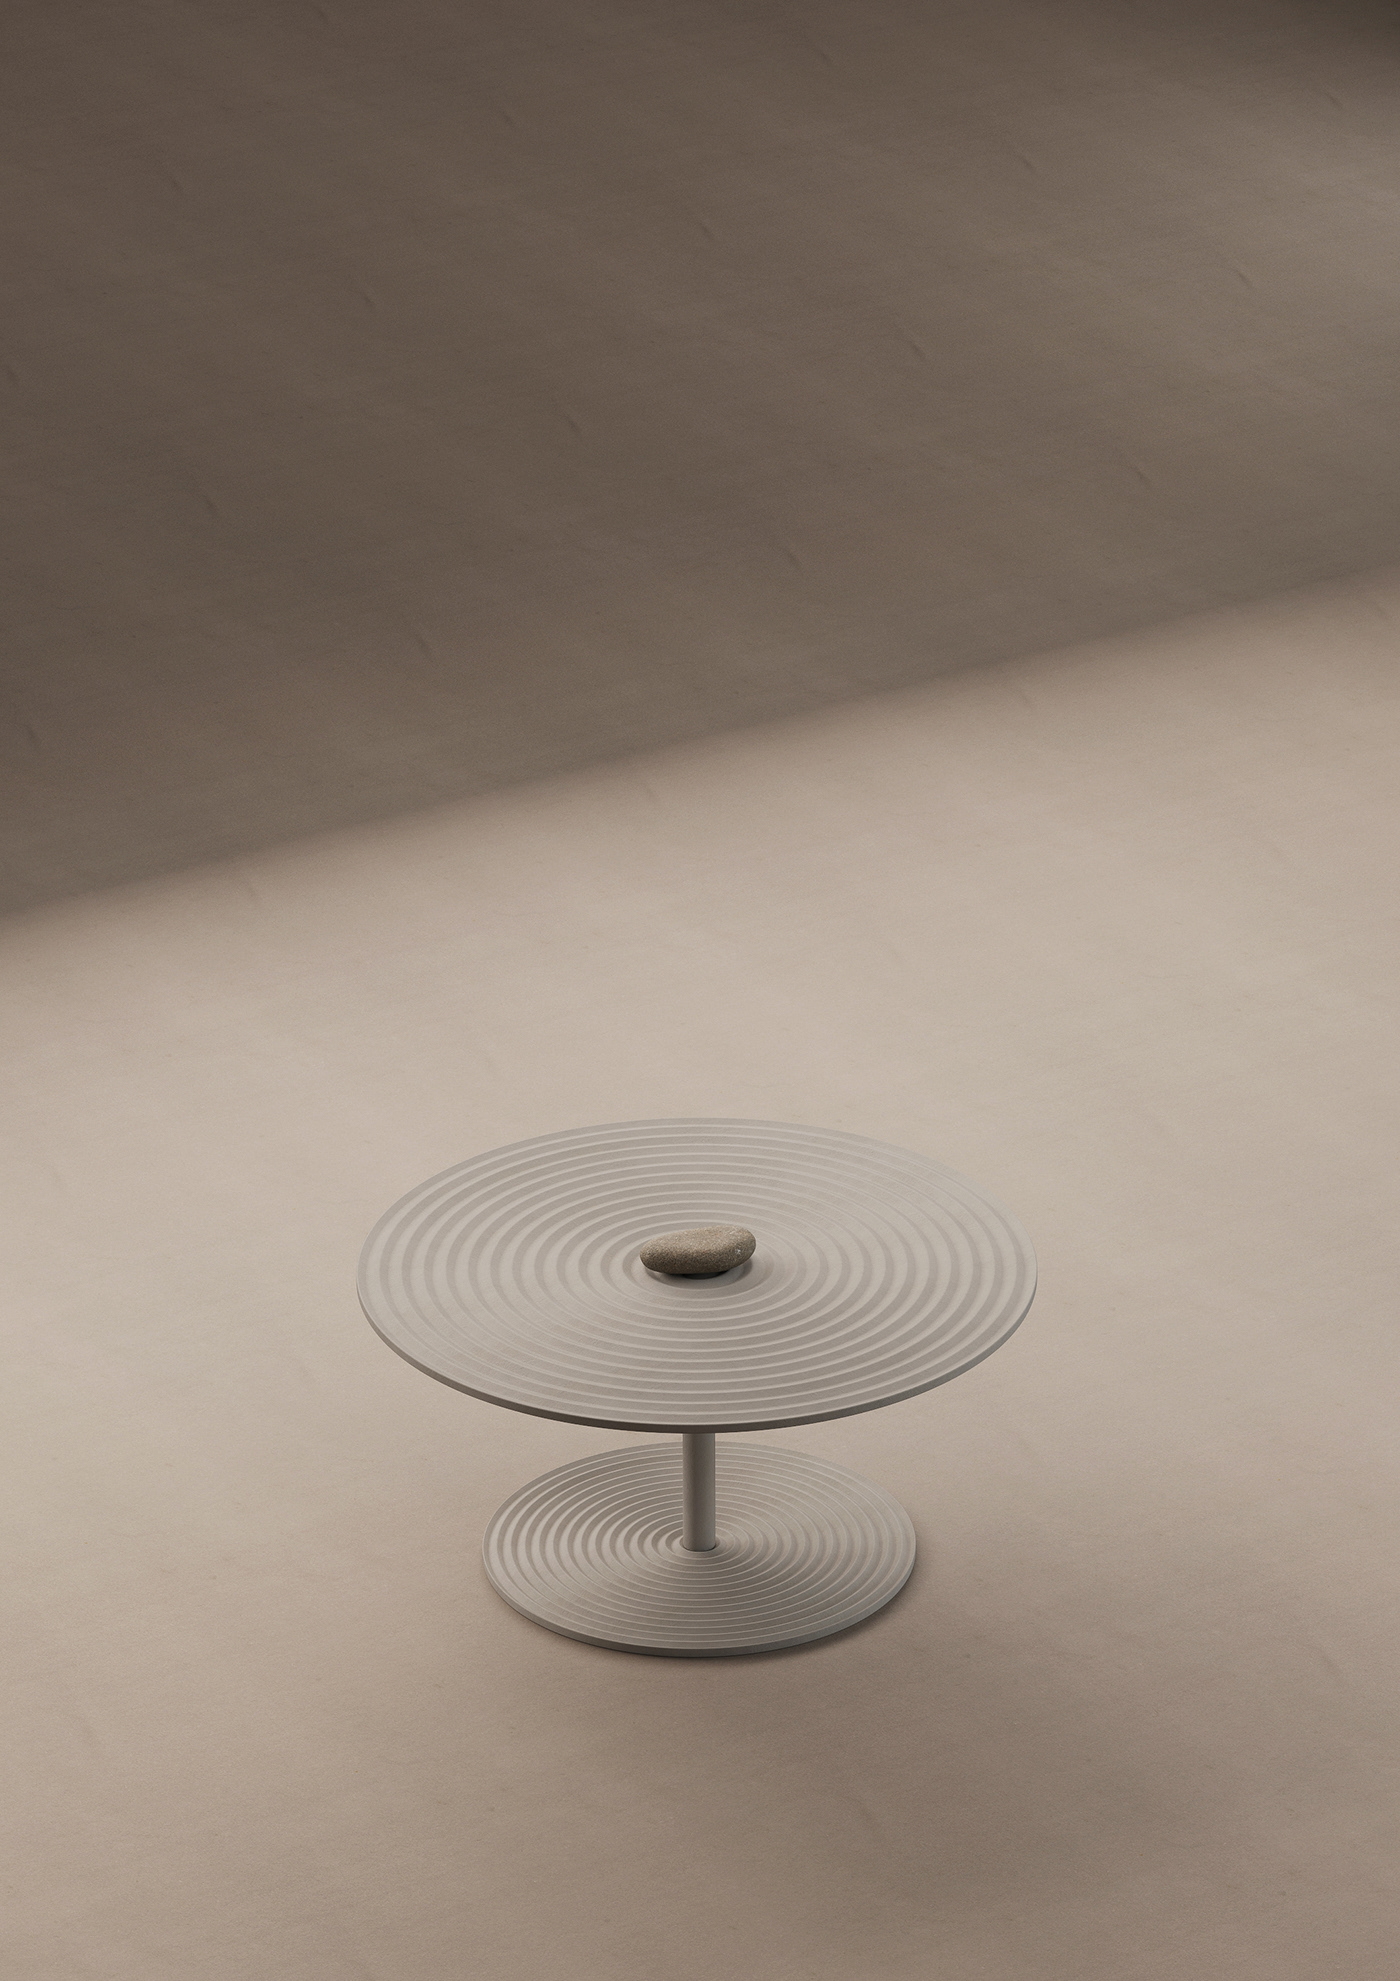 coffeetables DesignConcept furniture furnituredesign objectdesign productdesign tables TABLESDESIGN zen zengarden